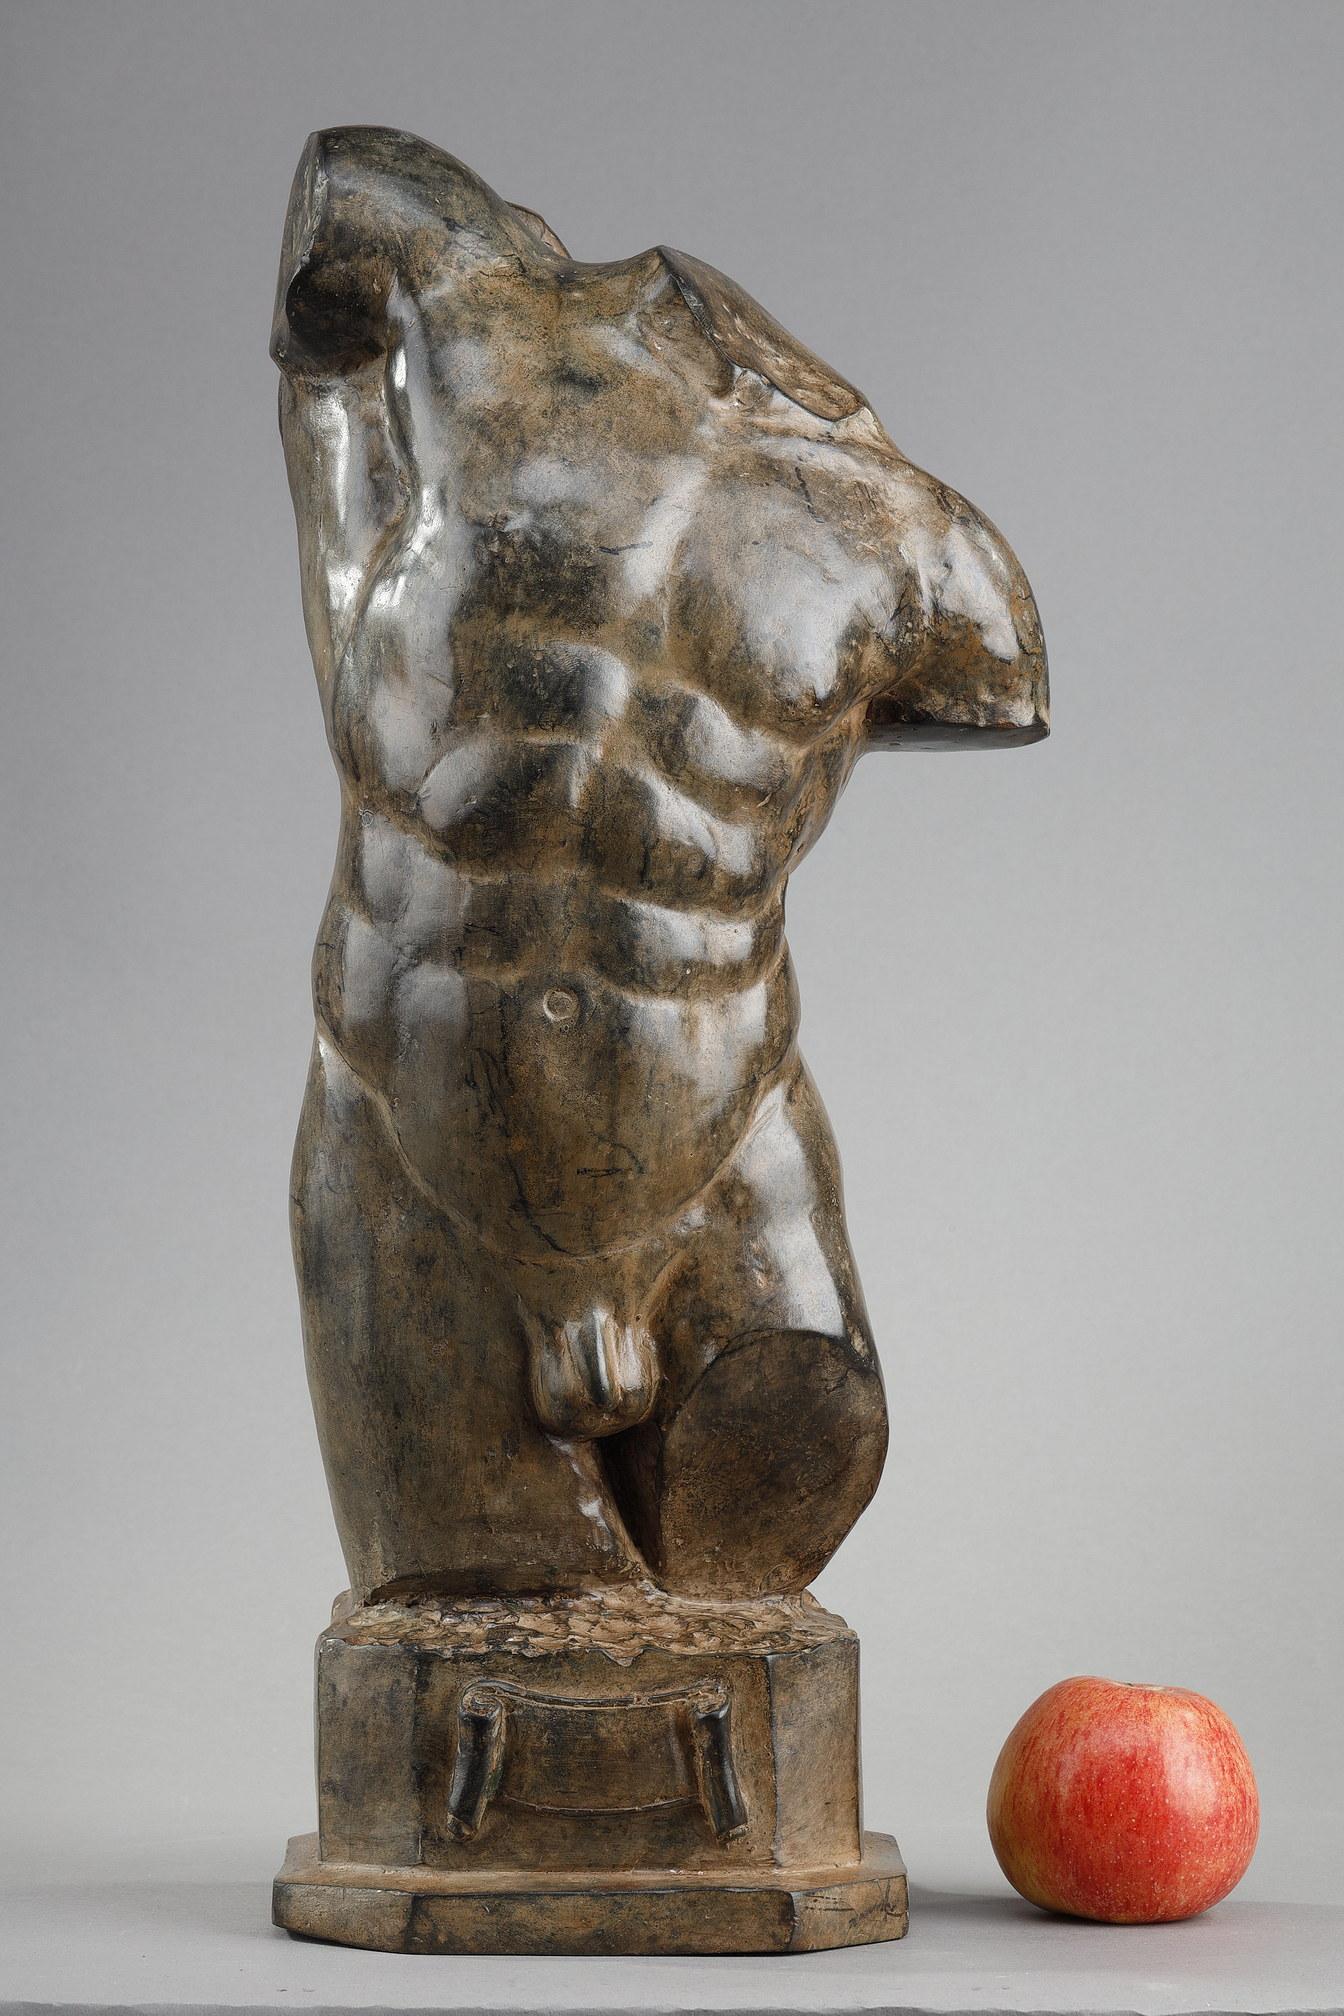 Bronzeguss mit nuancierter braun-grüner Patina, der die Büste eines nackten, muskulösen Mannes darstellt. Dies ist ein signierter Abguss des Autors selbst. In der Tat besitzt Pierre Chenet noch immer eine Kunstgießerei in Apt, in der vor allem